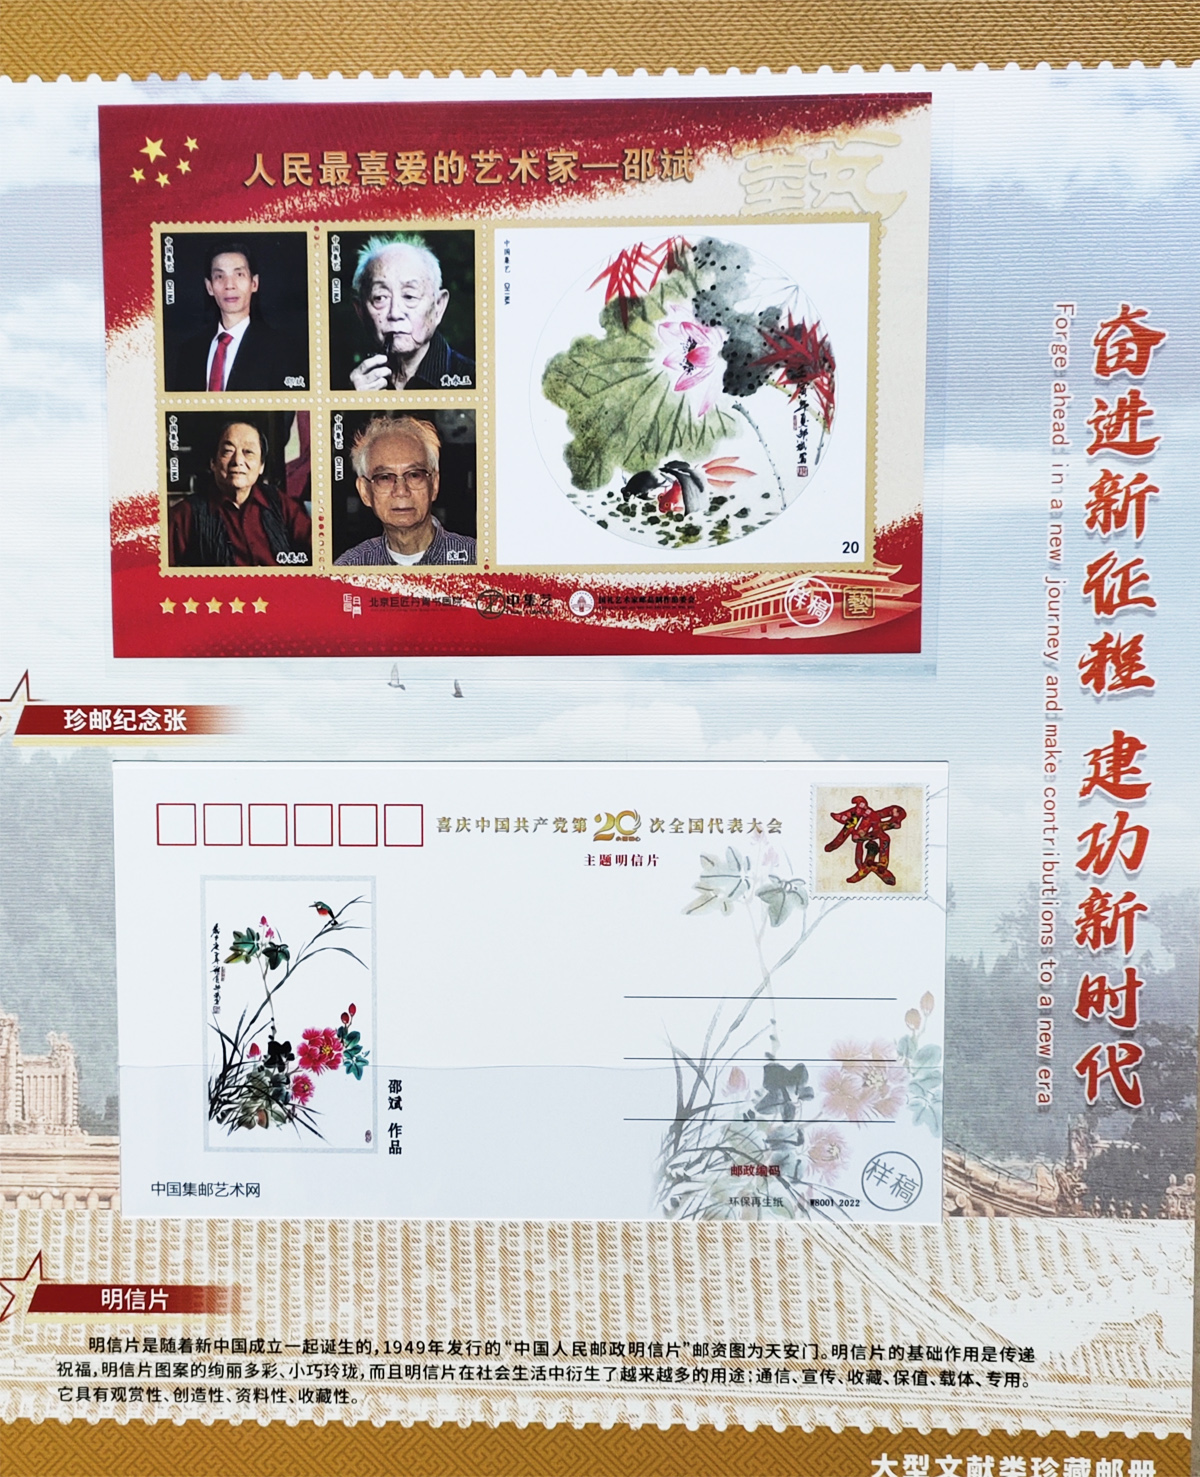 新时代艺术先锋人物邵斌大型文献类珍藏邮册――珍邮纪念张、明信片